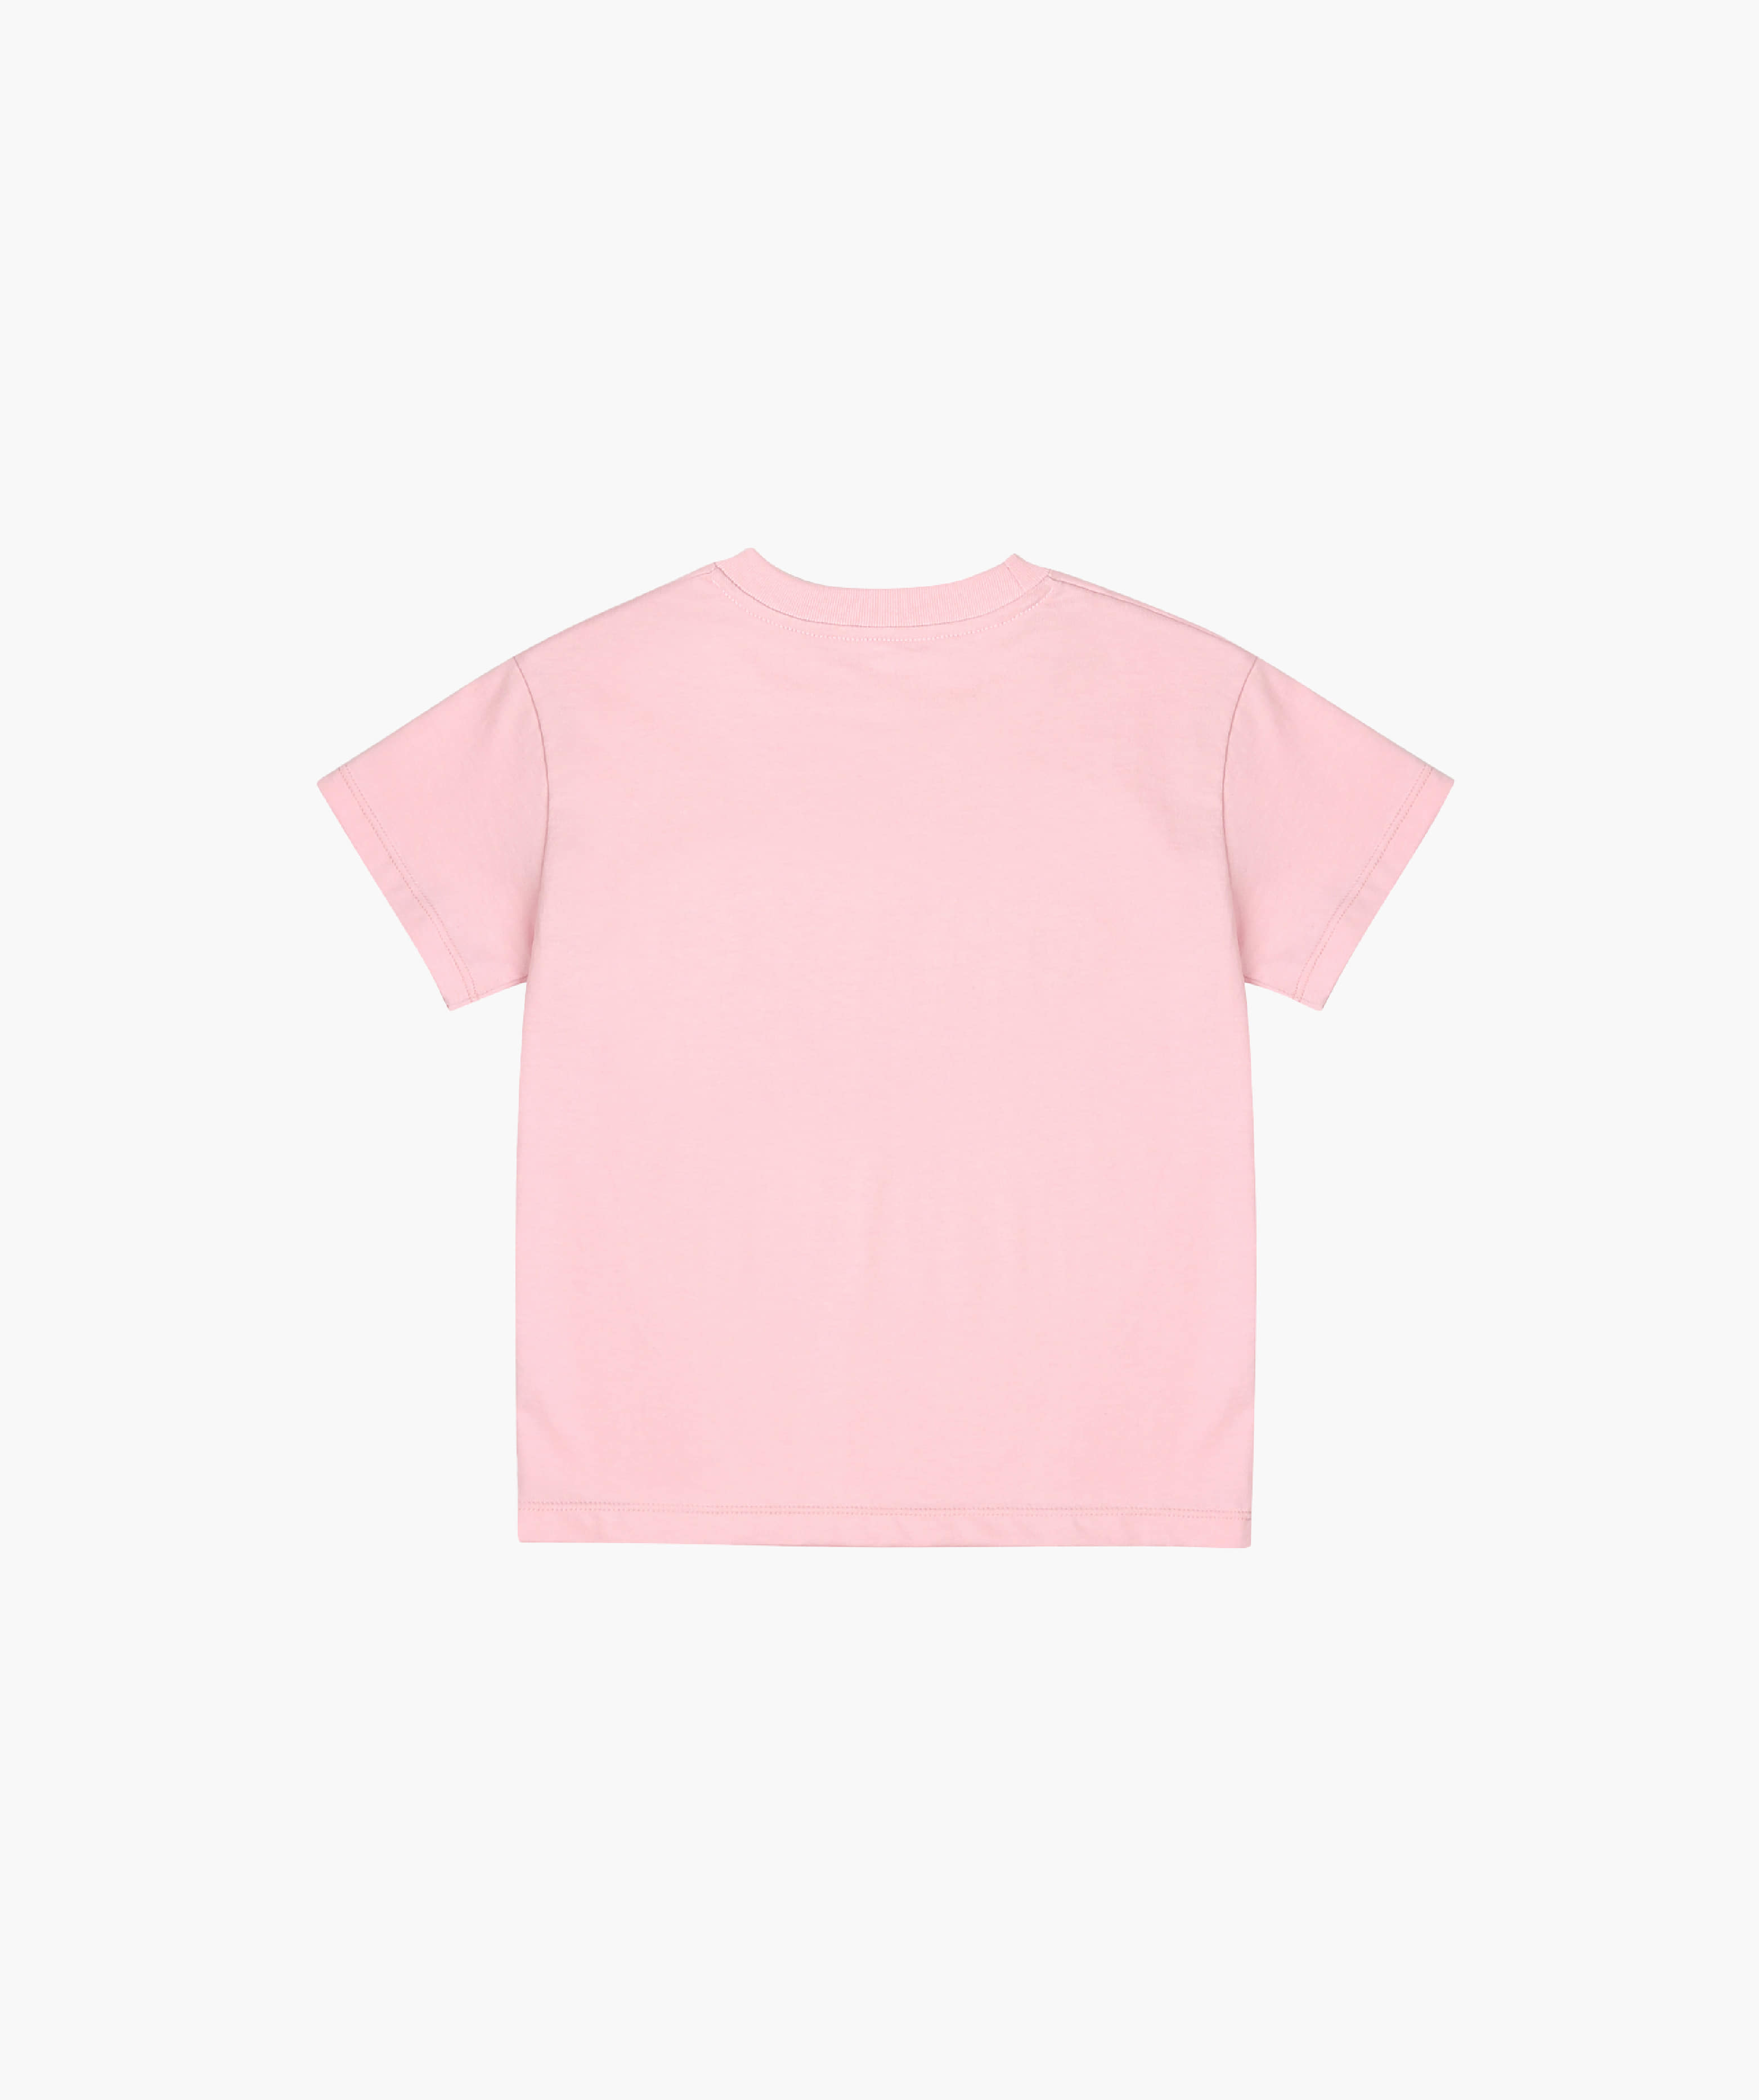 Dance T-Shirt_Pink